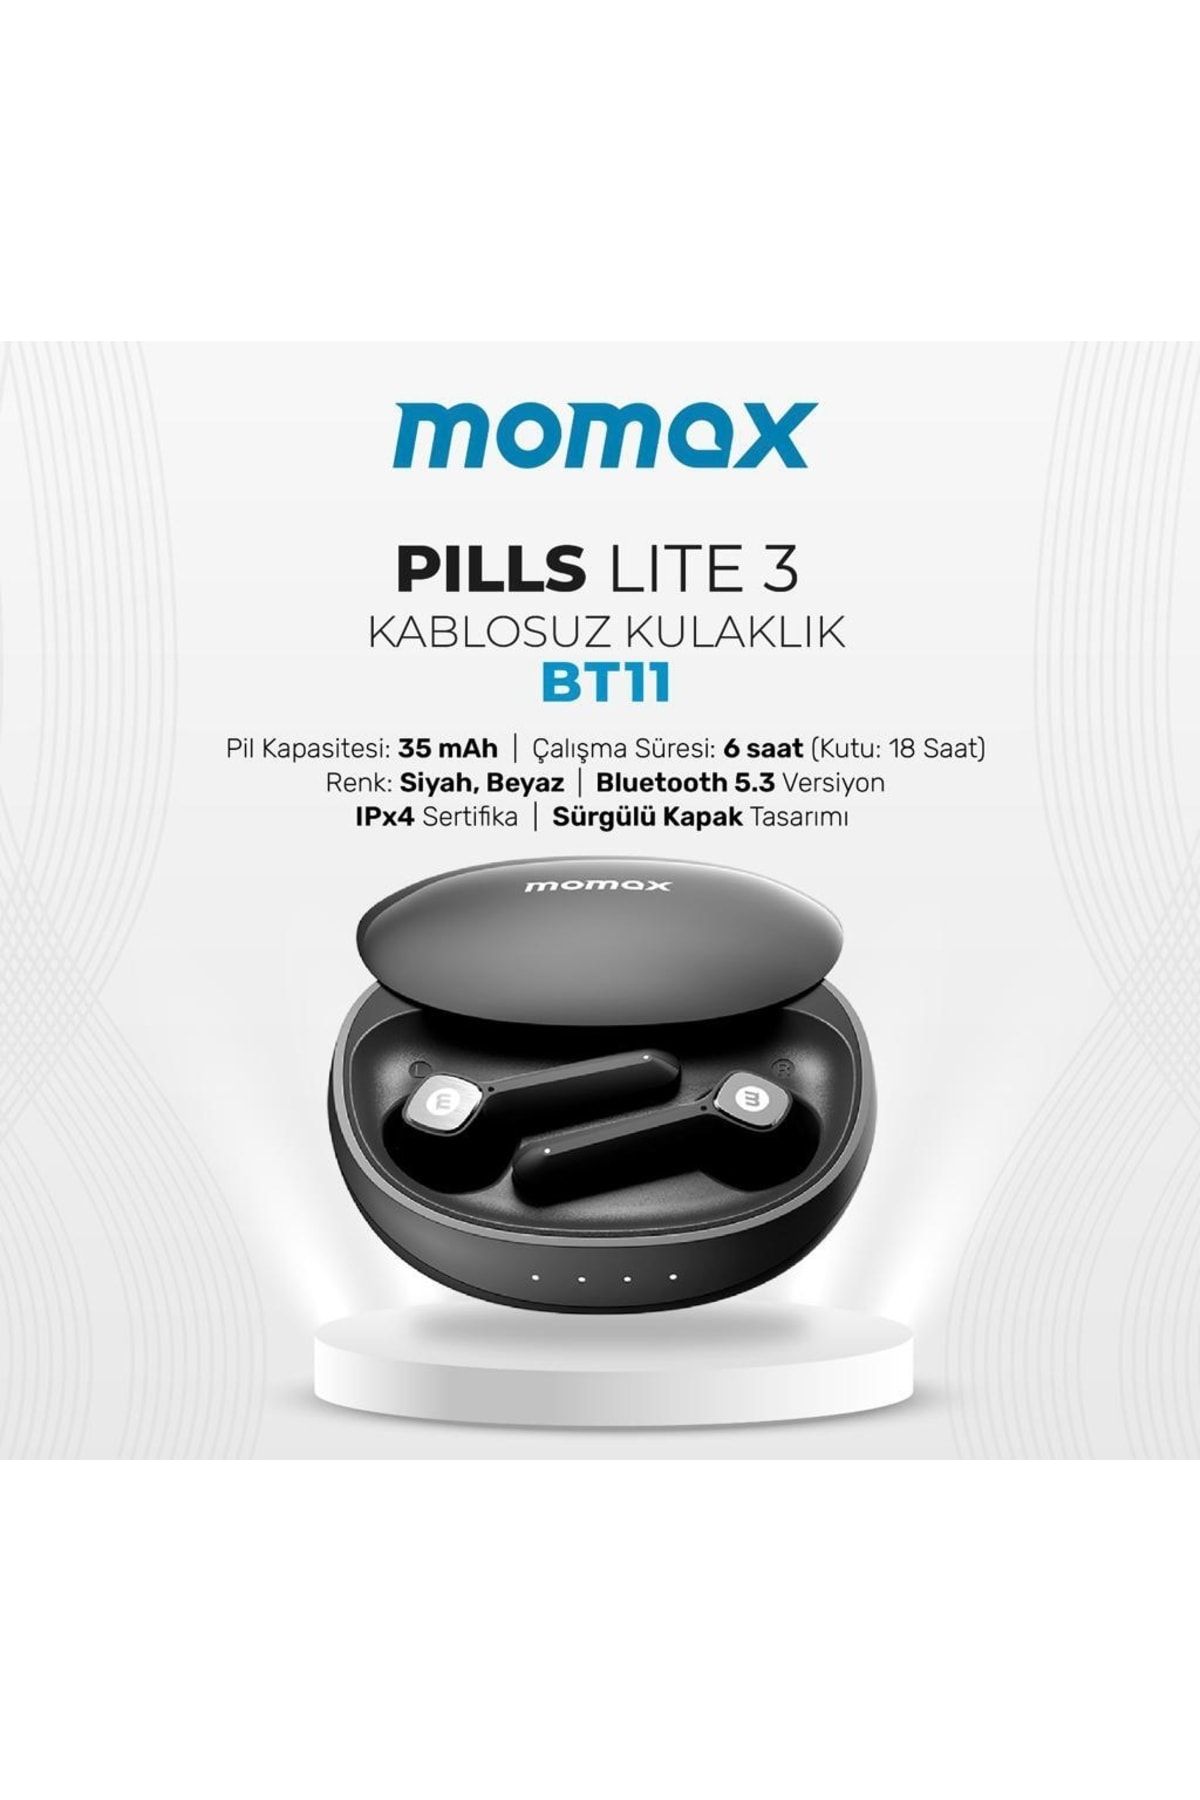 Momax Pills Lite E